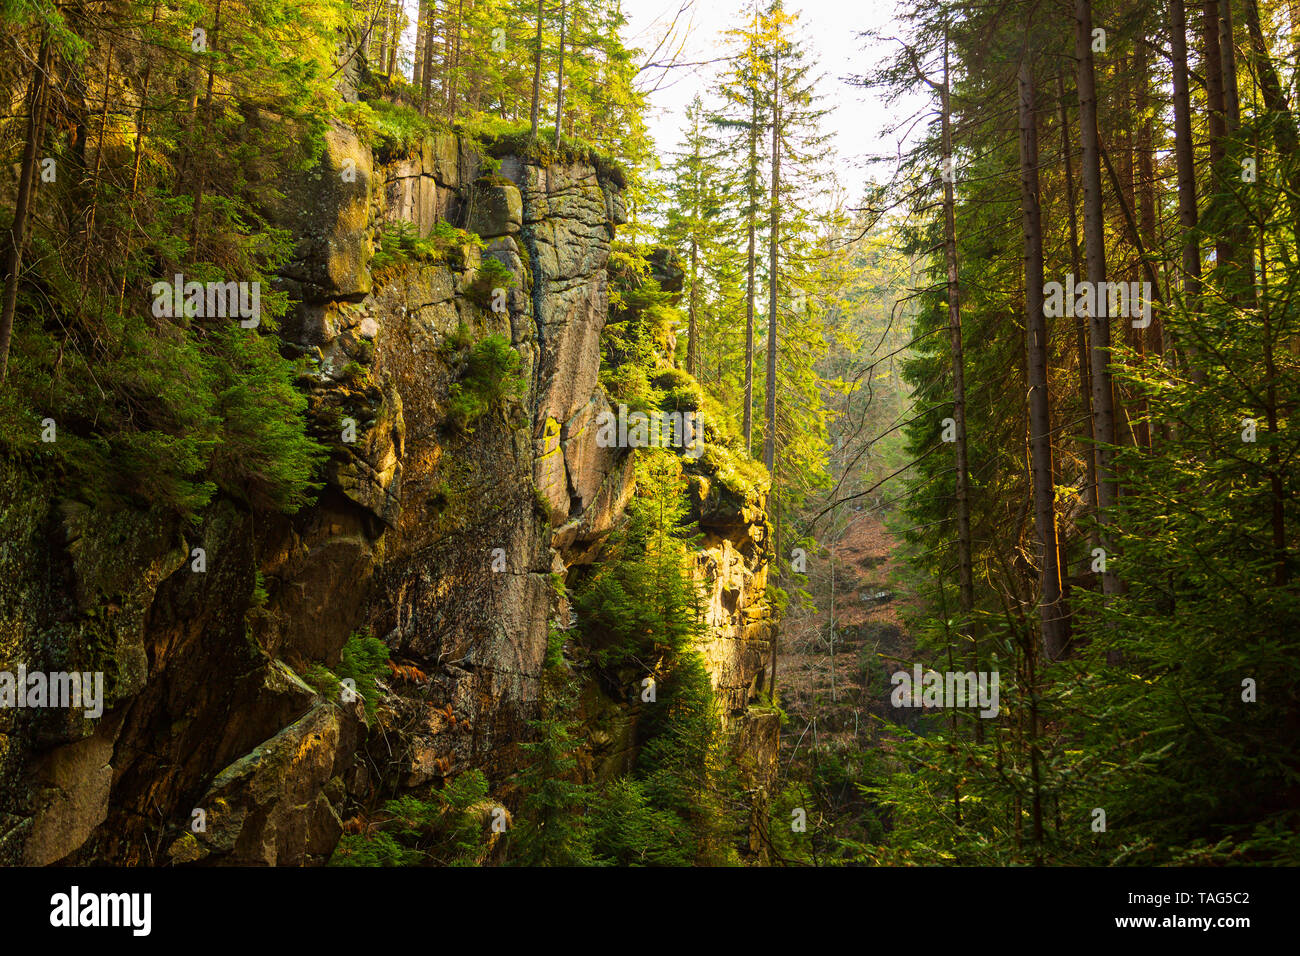 Kamienczyk mountain ravine in pine european forest Stock Photo